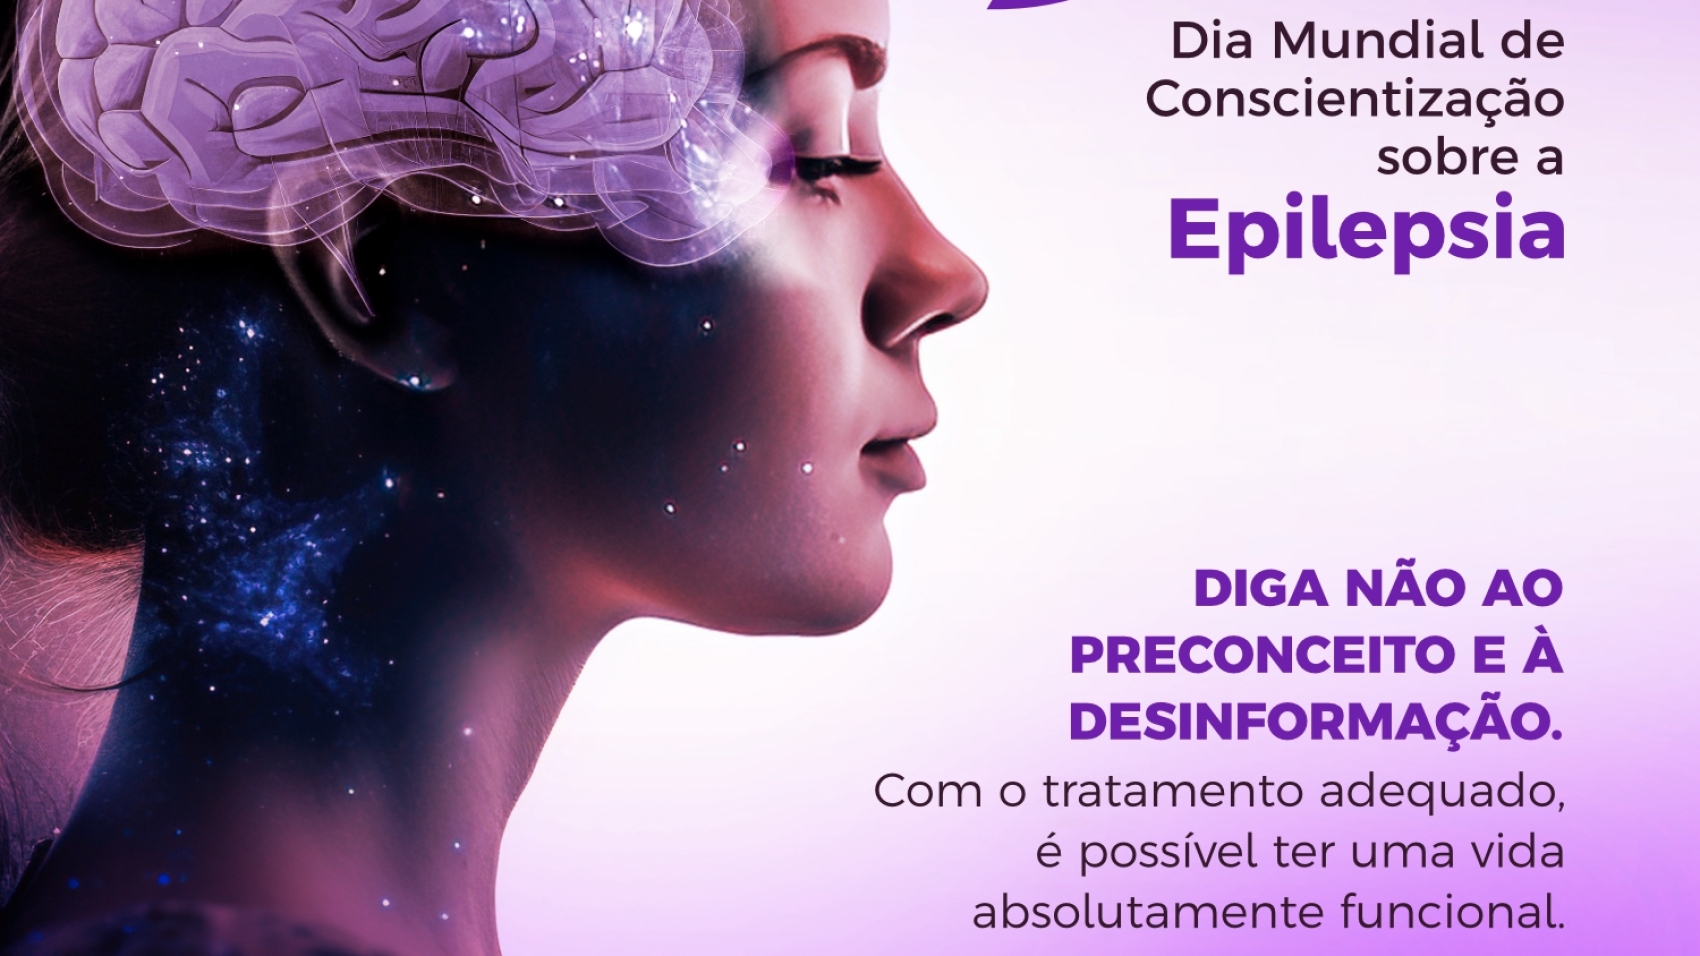 Dia Mundial de Conscientização Sobre a Epilepsia